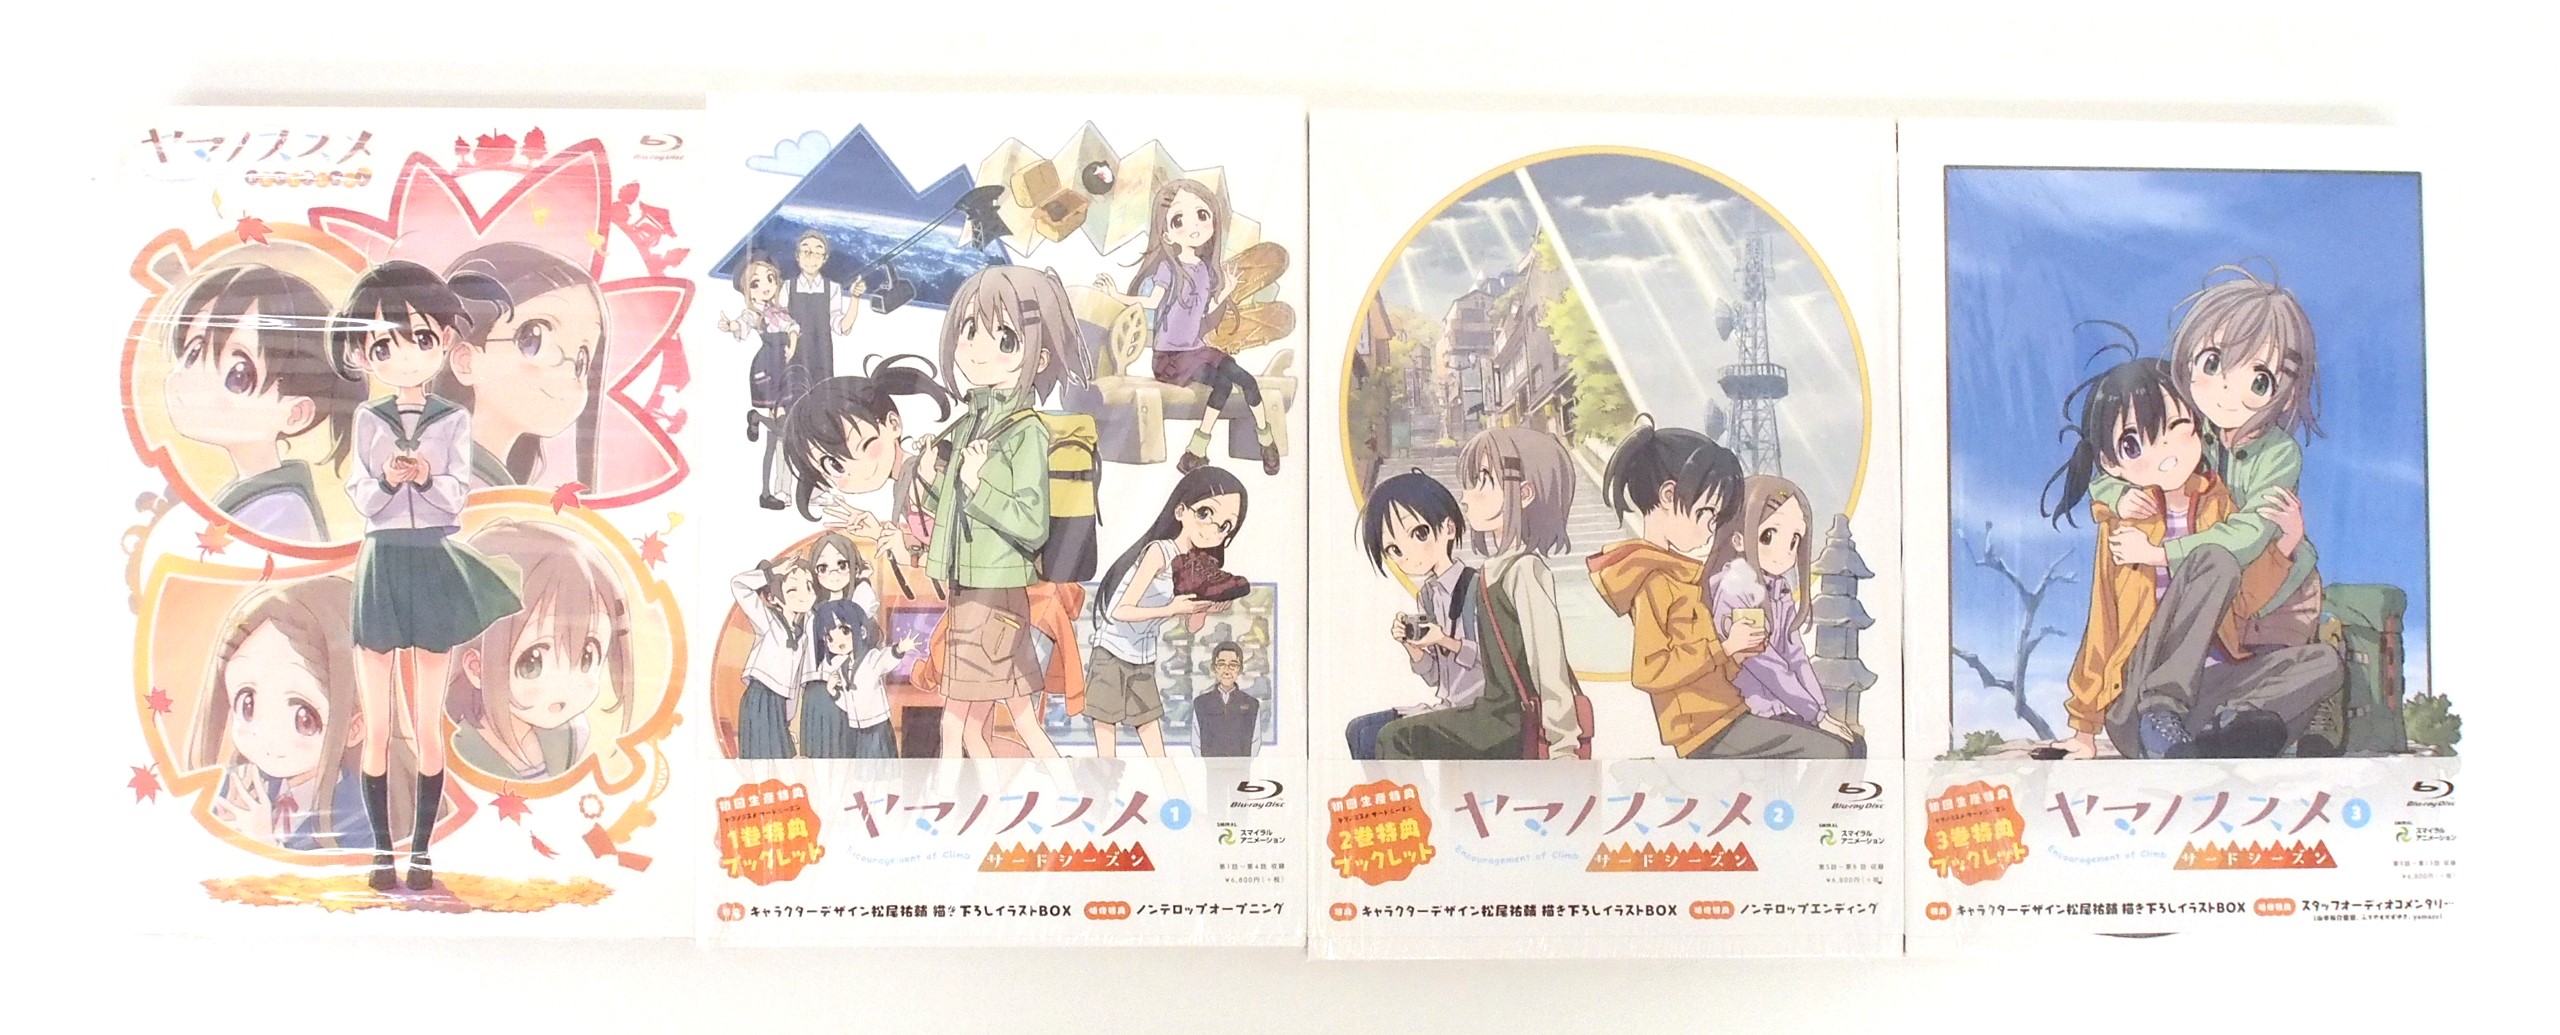 Blu-ray 4巻セット『ヤマノススメ サードシーズン』第1-3巻・おもいでプレゼント 高価買取！の表紙